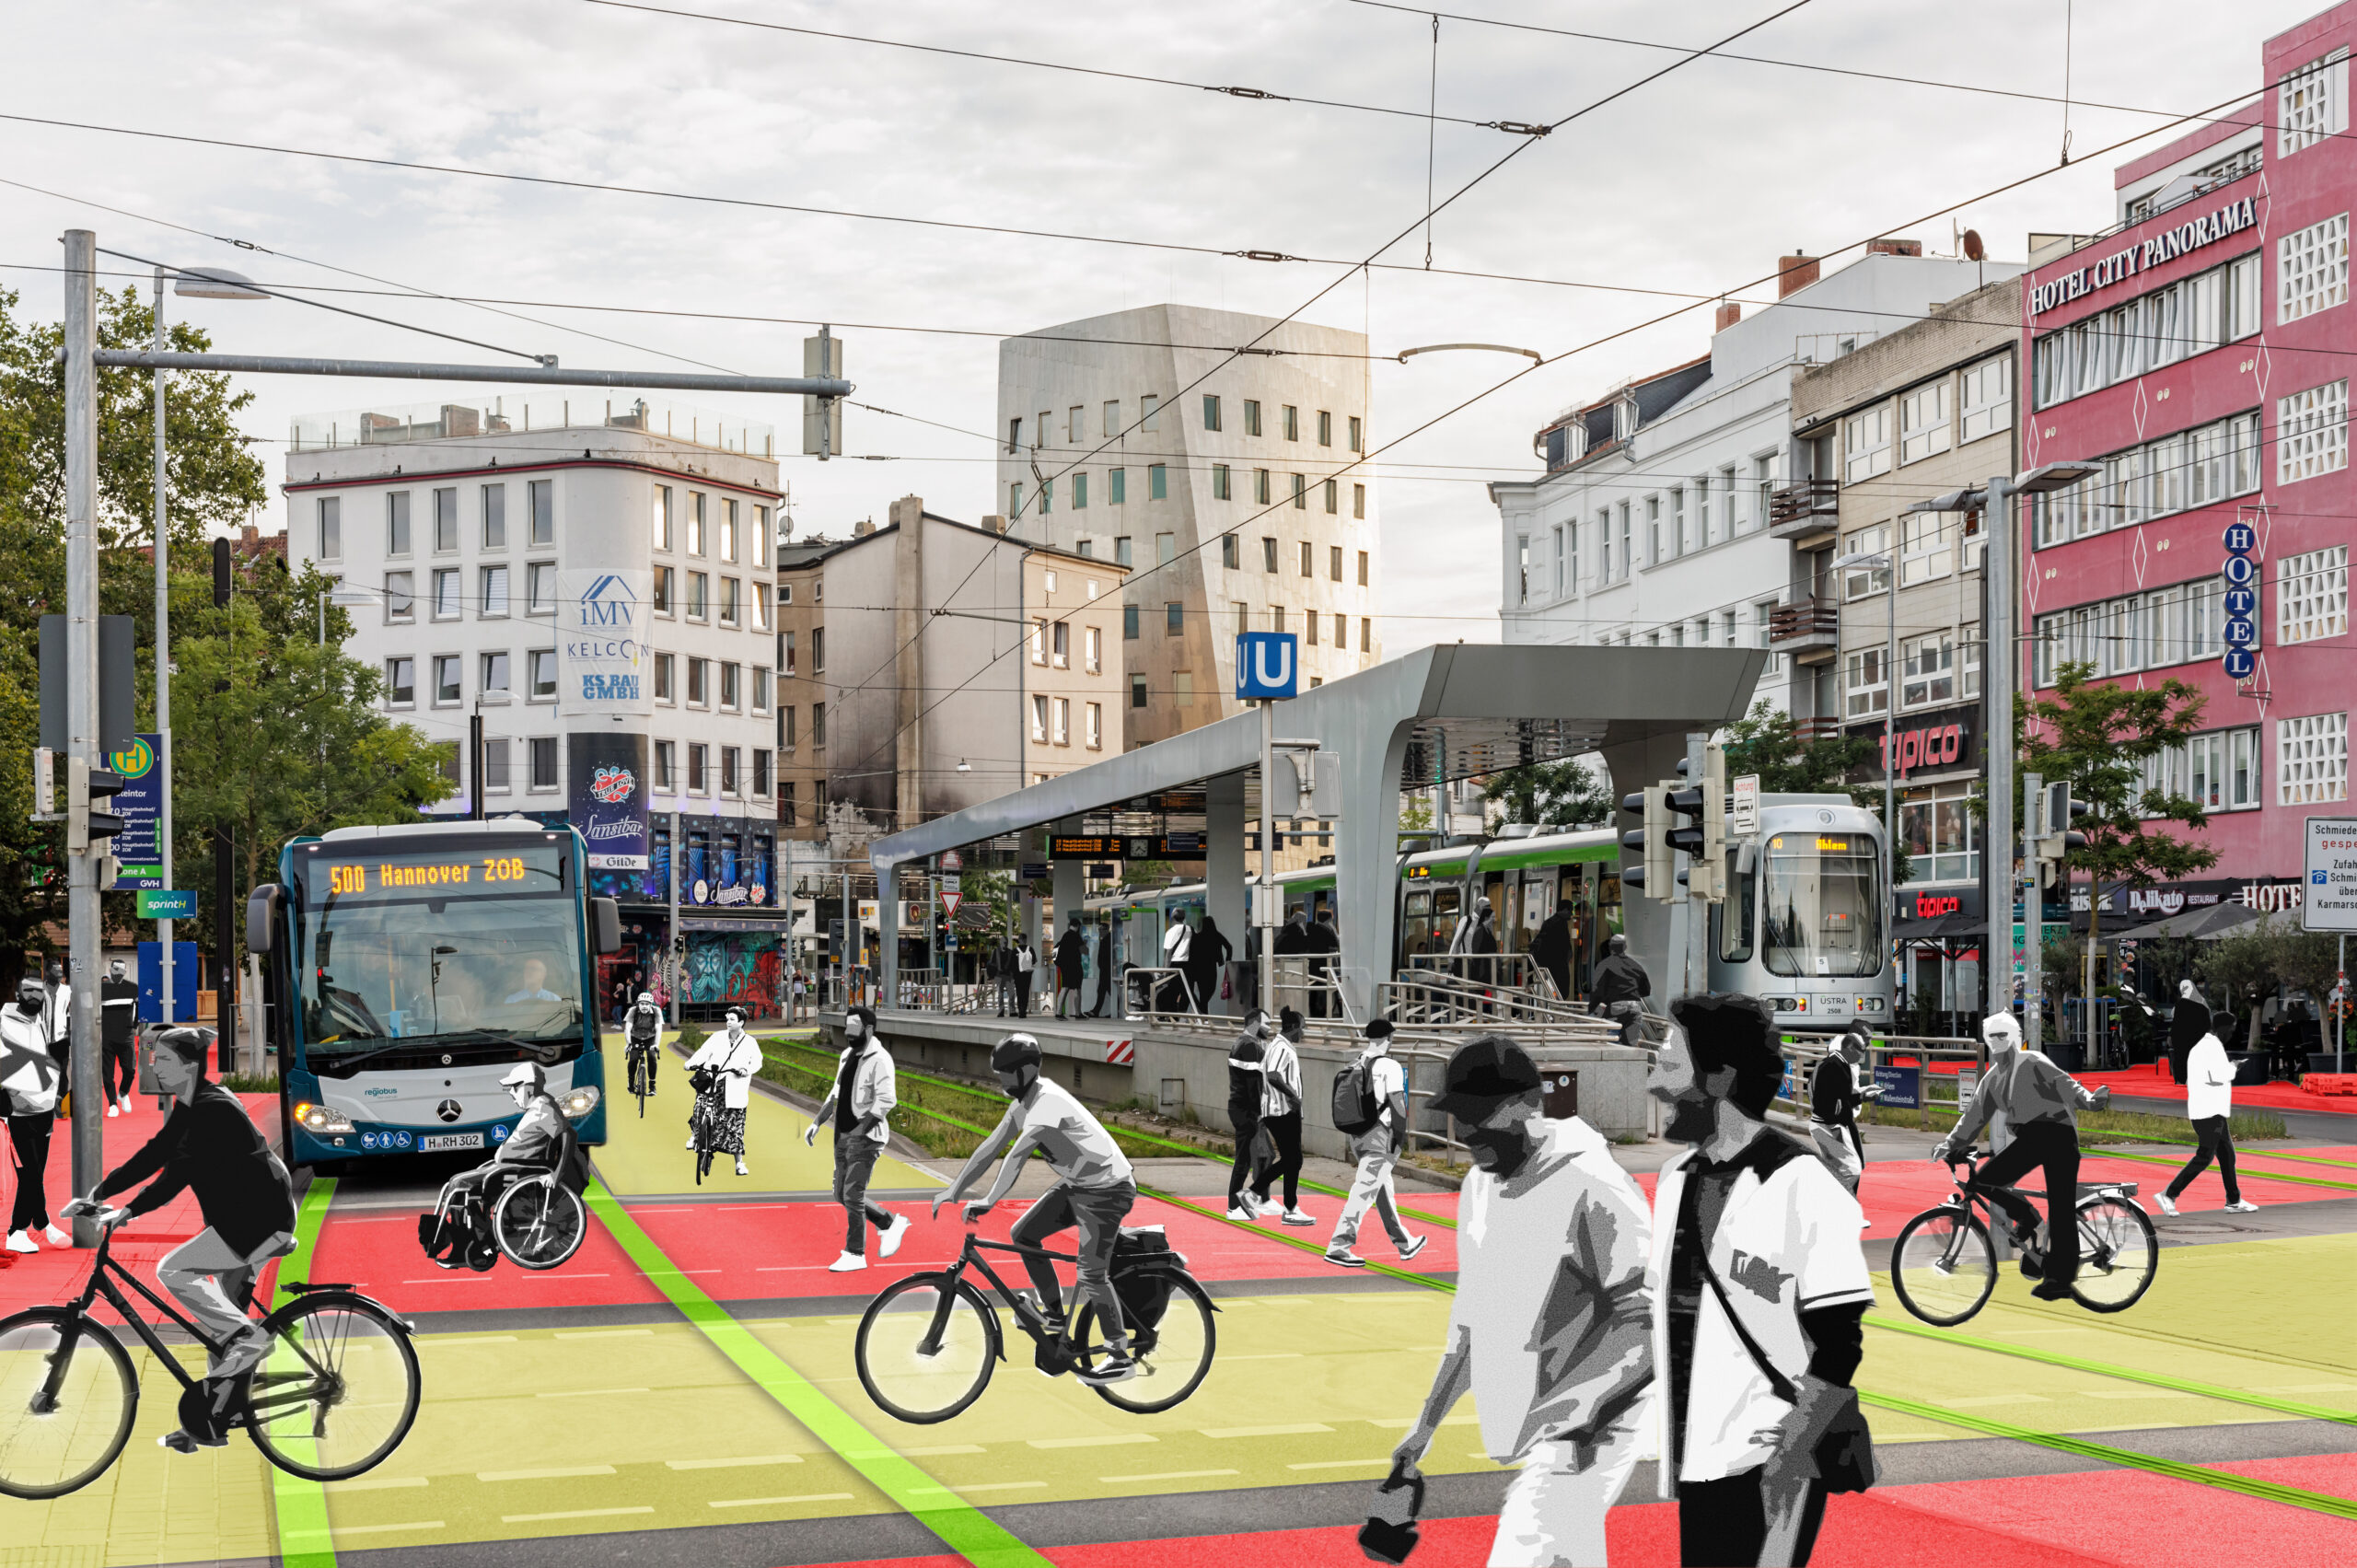 Diese Visualisierung zeigt eine mögliche zukünftige Verkehrslenkung auf dem Steintorplatz in Hannover.